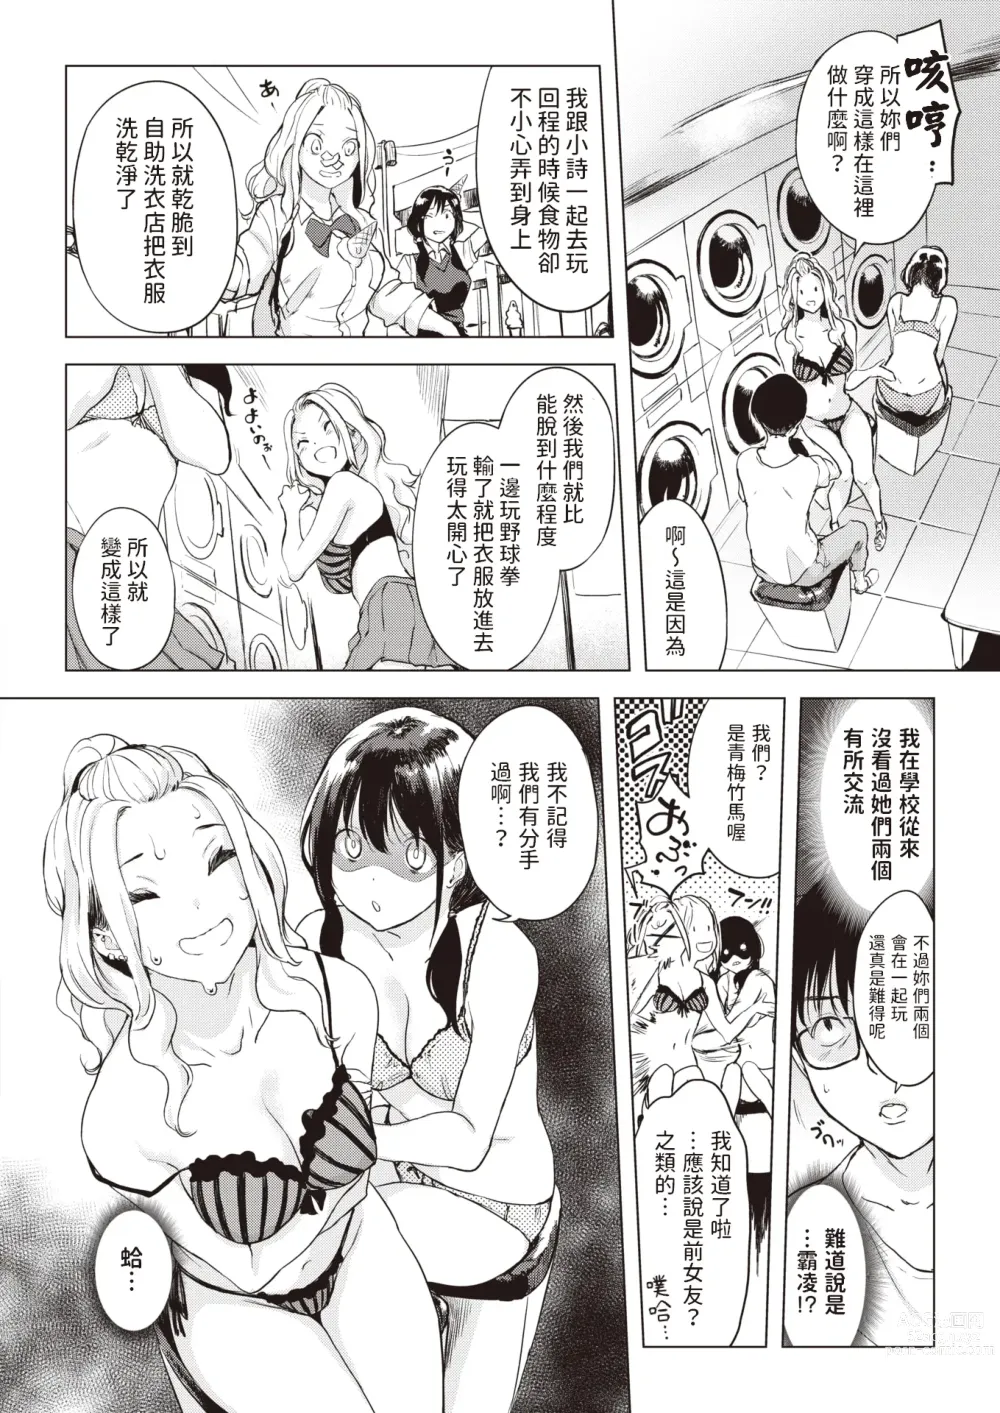 Page 4 of manga Coin Laundry e Ikou!